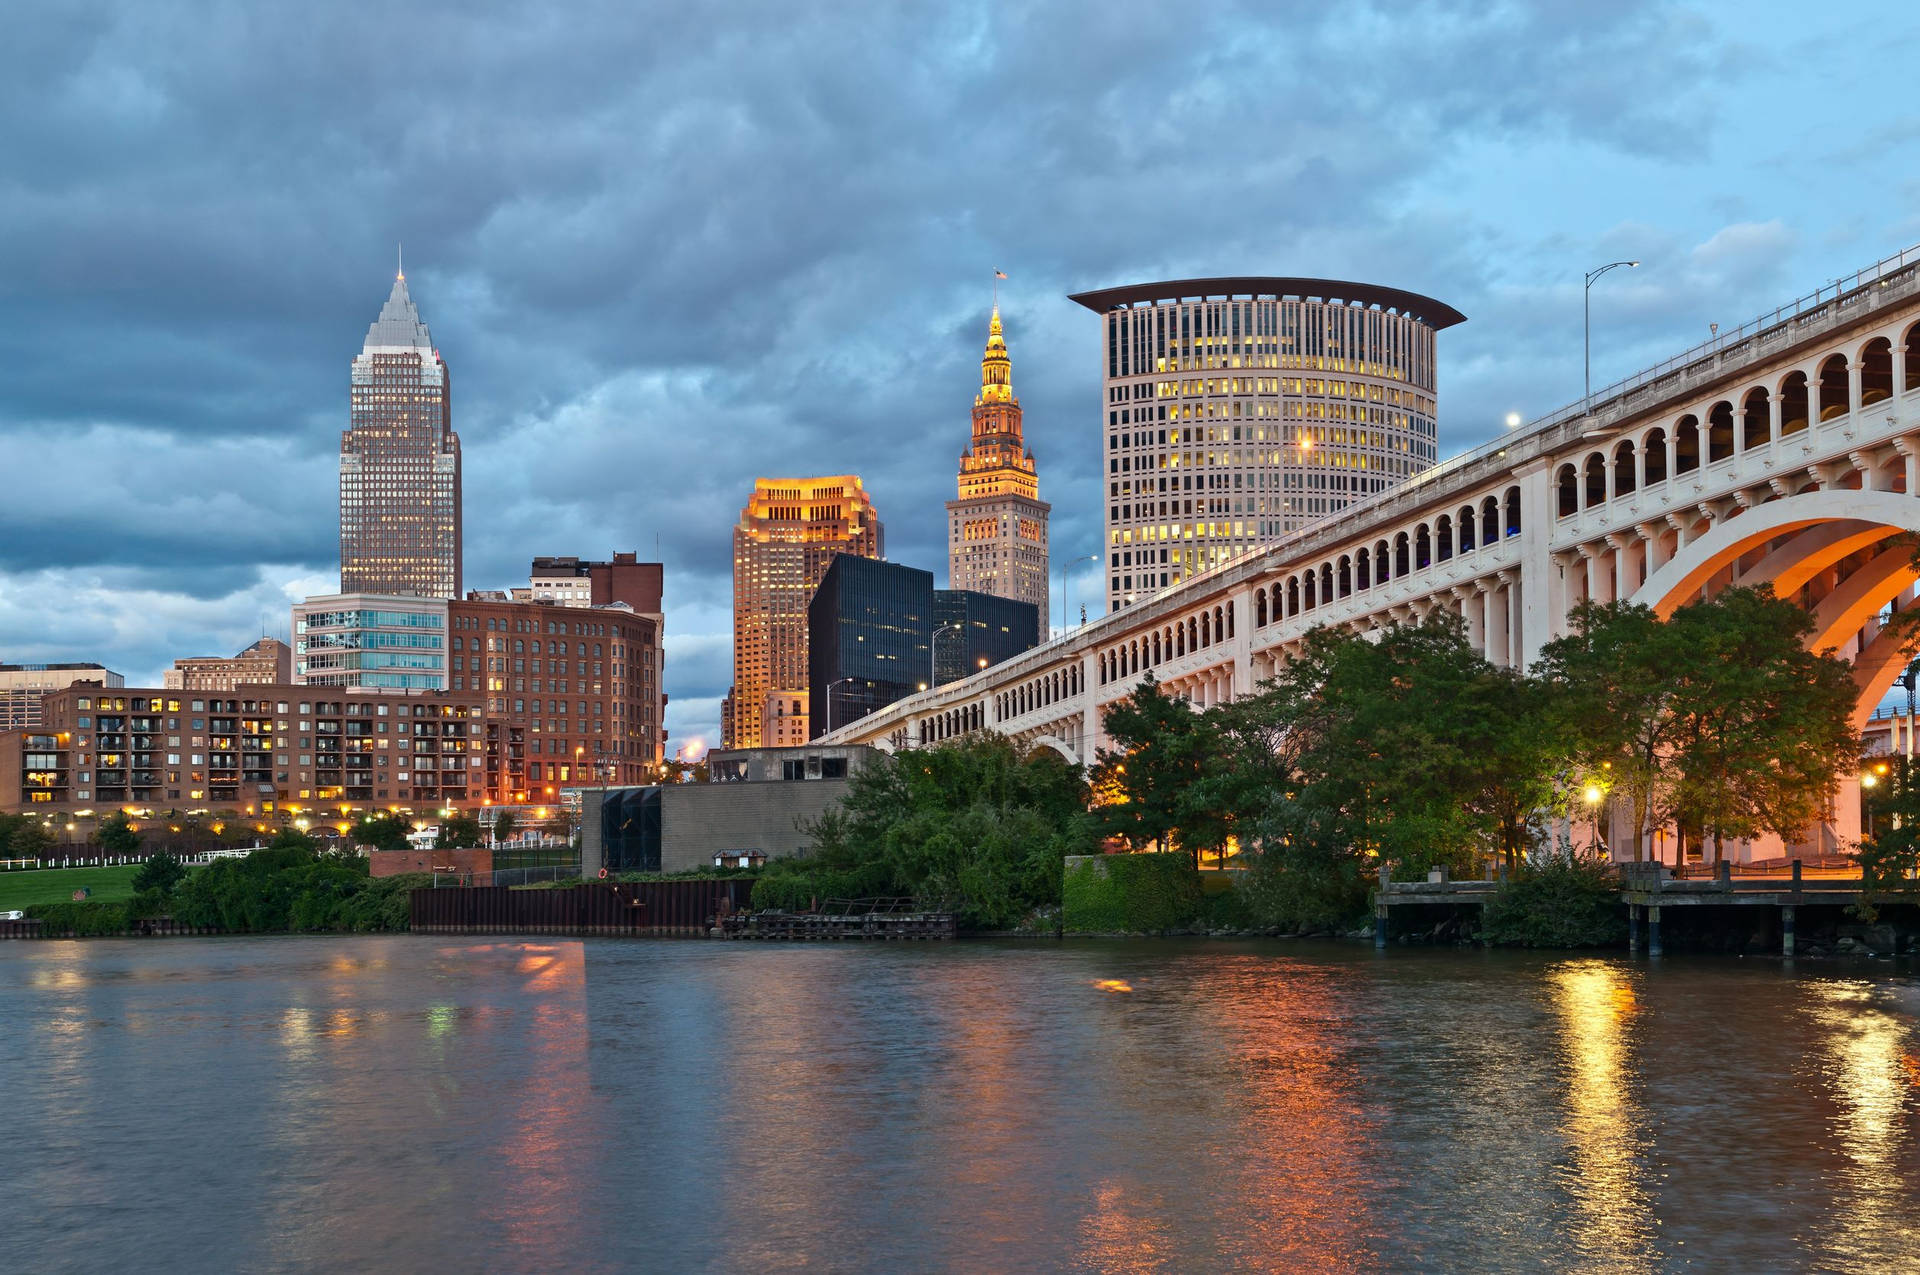 Caption: City Lights Shining Bright - Cleveland, Ohio